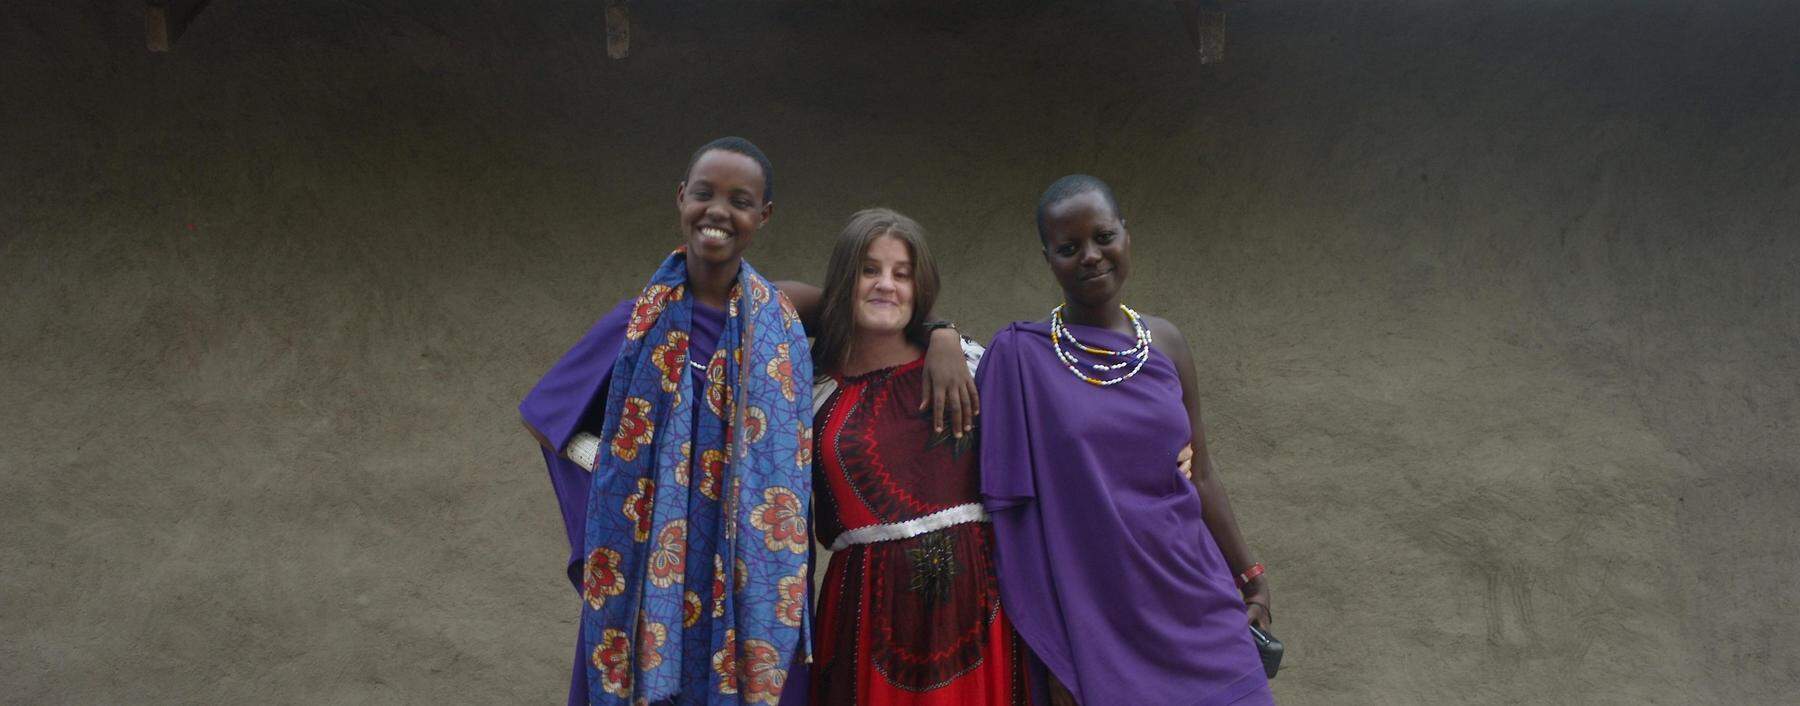 Die Frauen des Dorfs haben sich an die Weiße in ihrer Mitte gewöhnt, obwohl Lugstein nicht die typische Kleidung der Massai trägt.